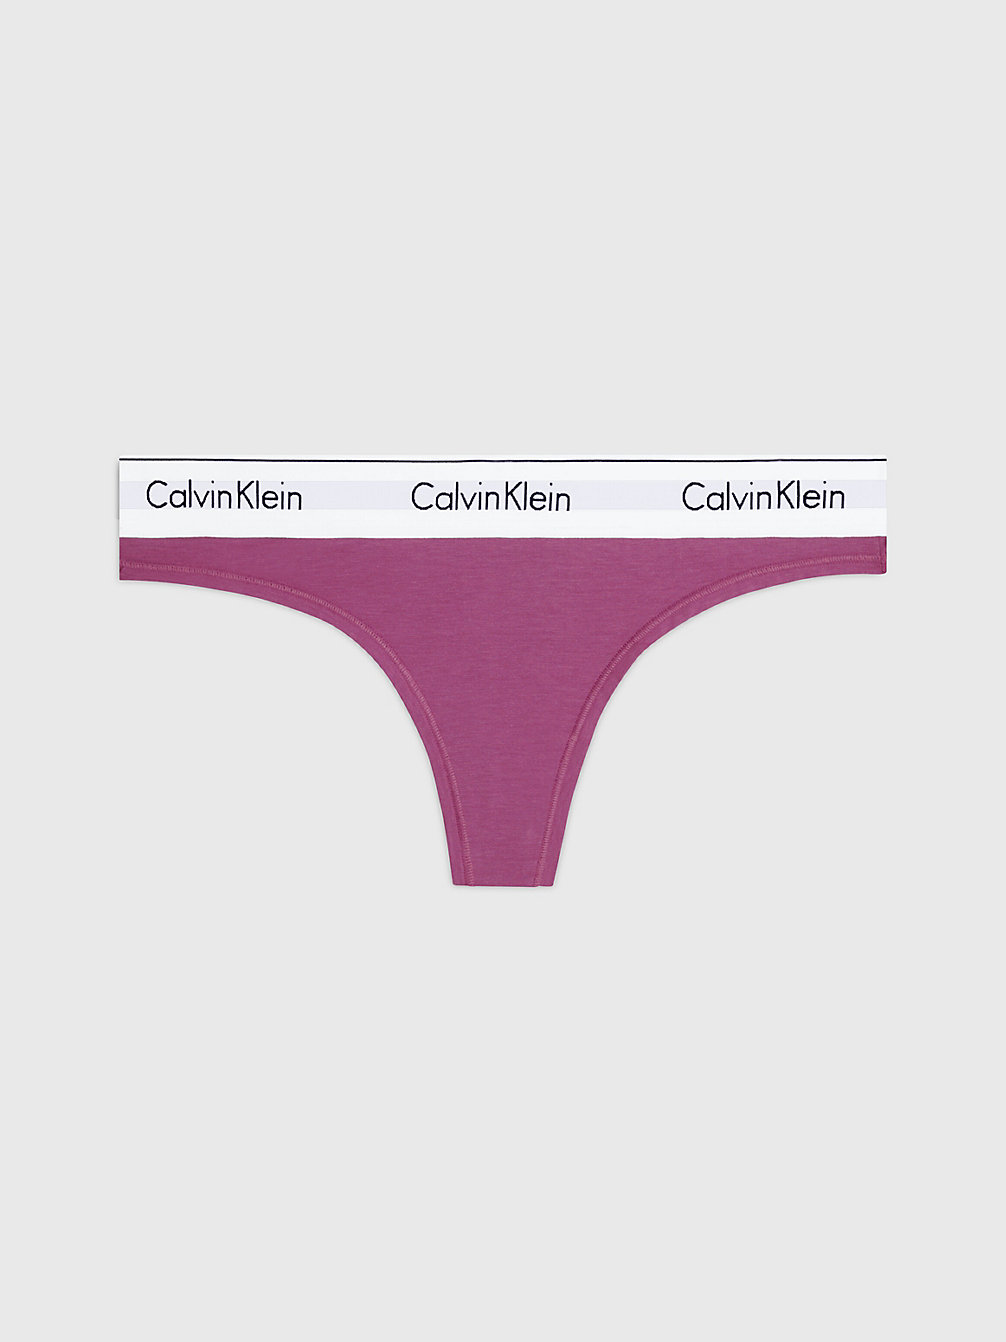 AMETHYST Thong - Modern Cotton undefined women Calvin Klein